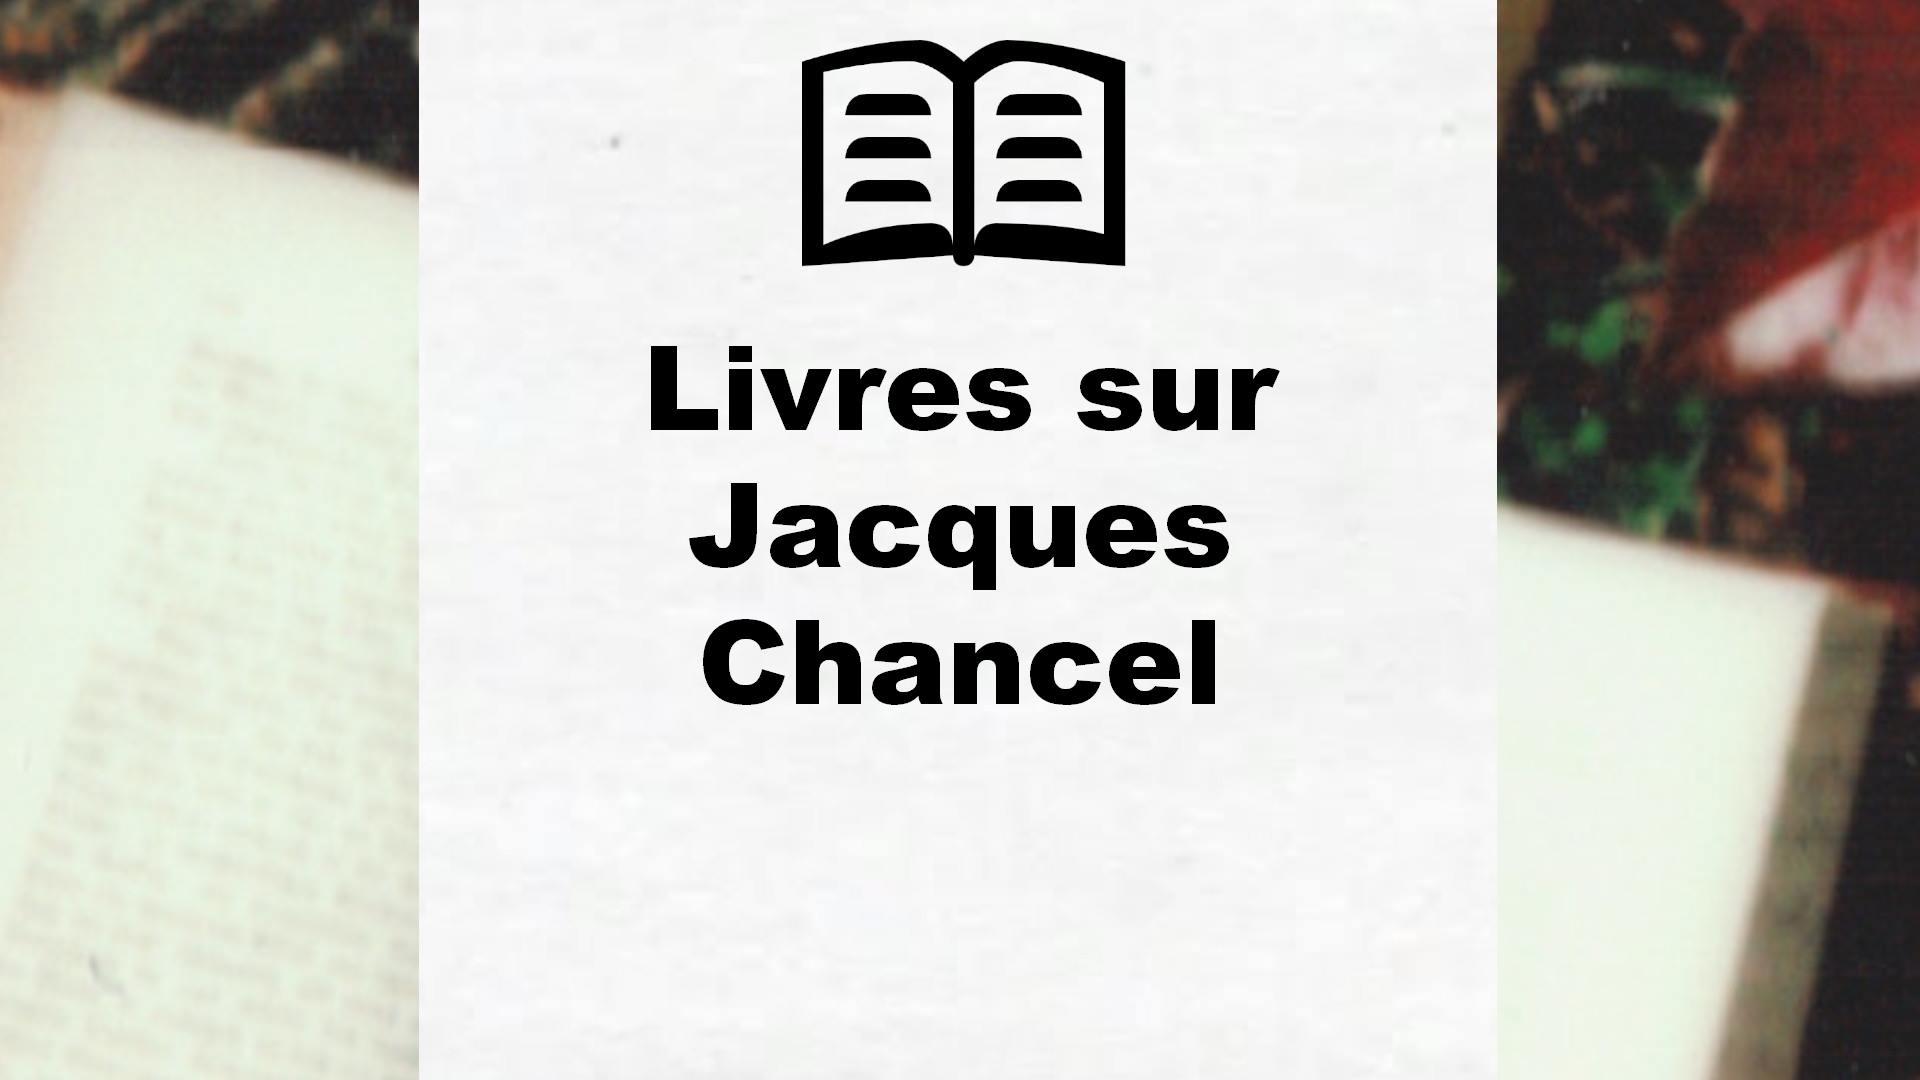 Livres sur Jacques Chancel